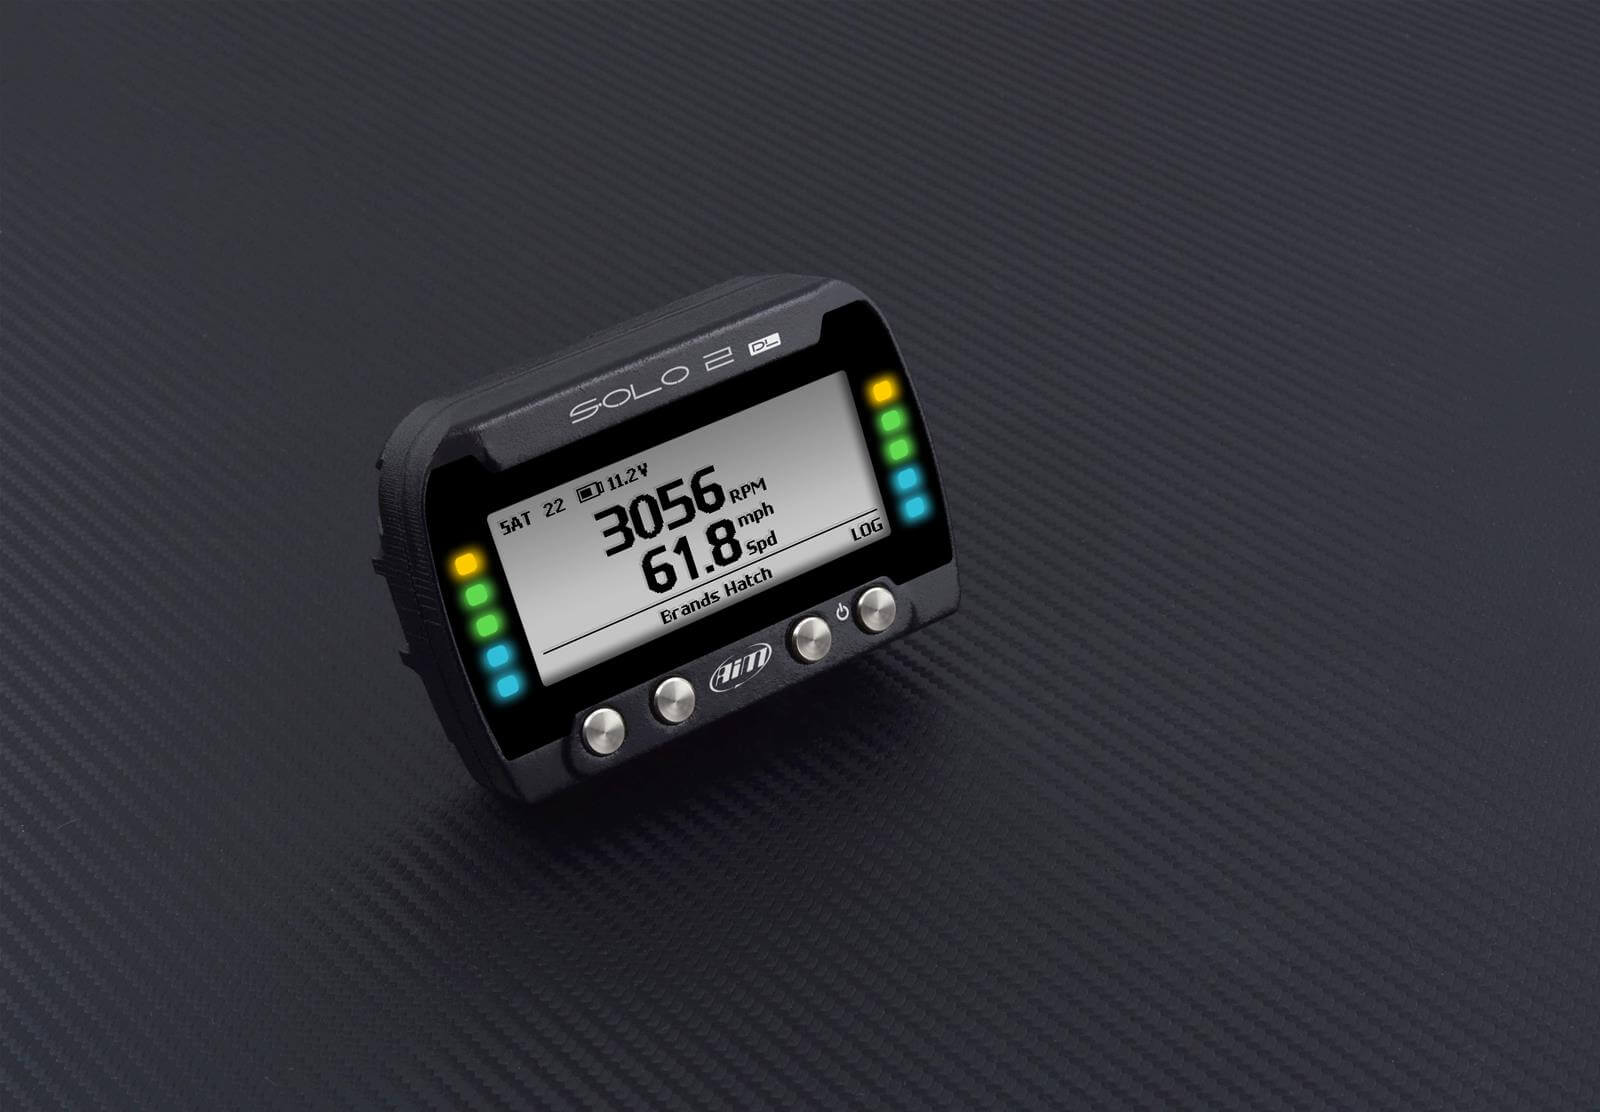 Solo 2 DL GPS Lap Timer - $799.99